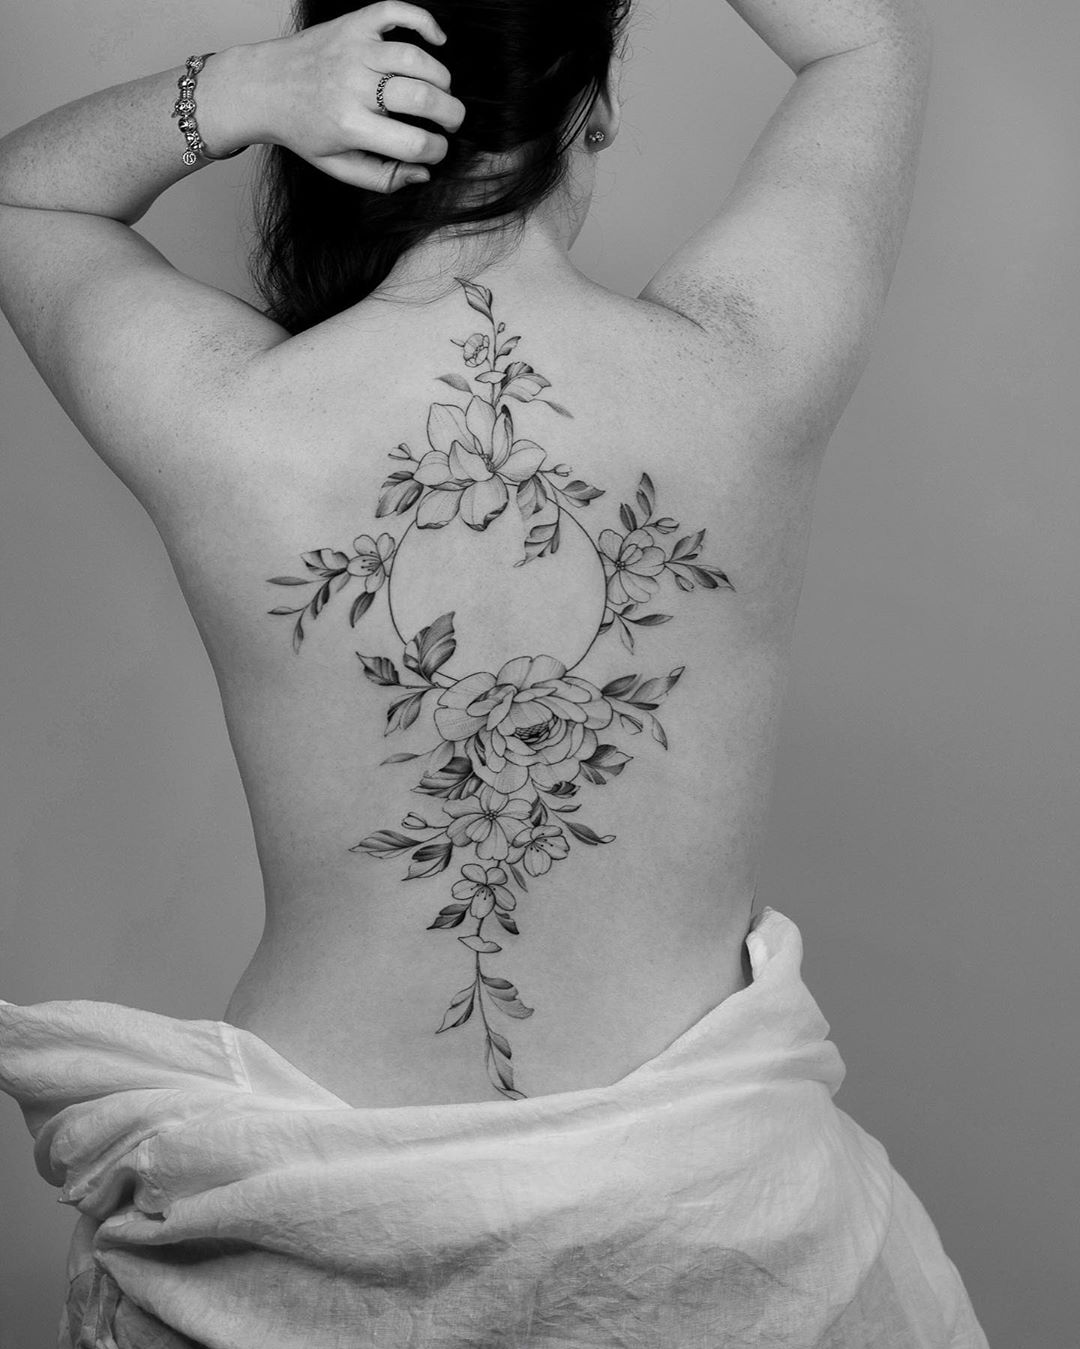 Back tattoo by Hannah Nova